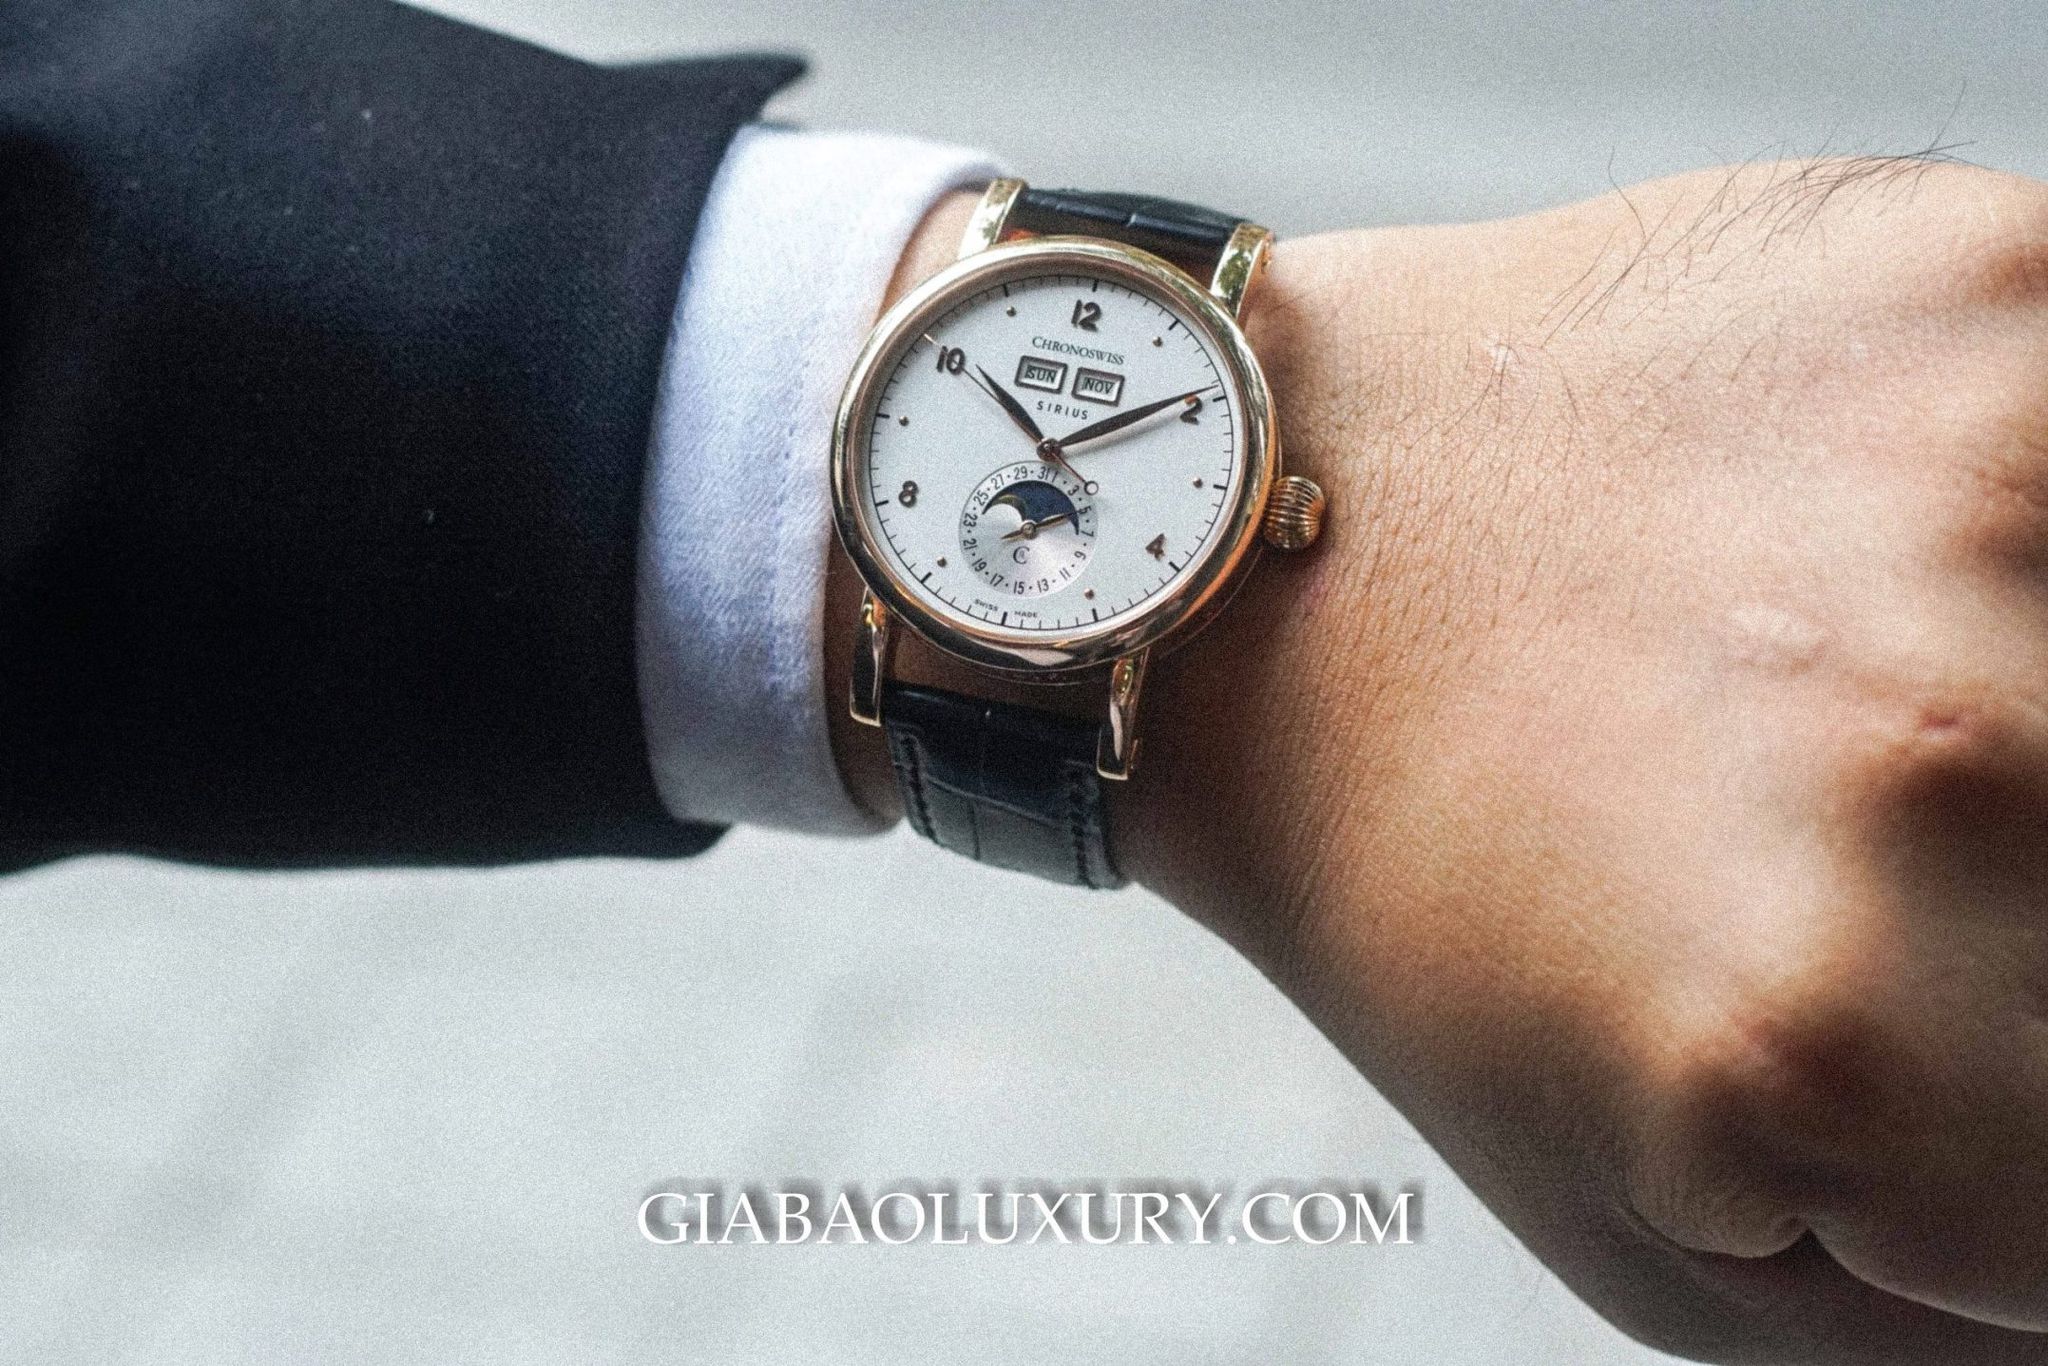 Thu mua đồng hồ Chronoswiss chính hãng tại Gia Bảo Luxury